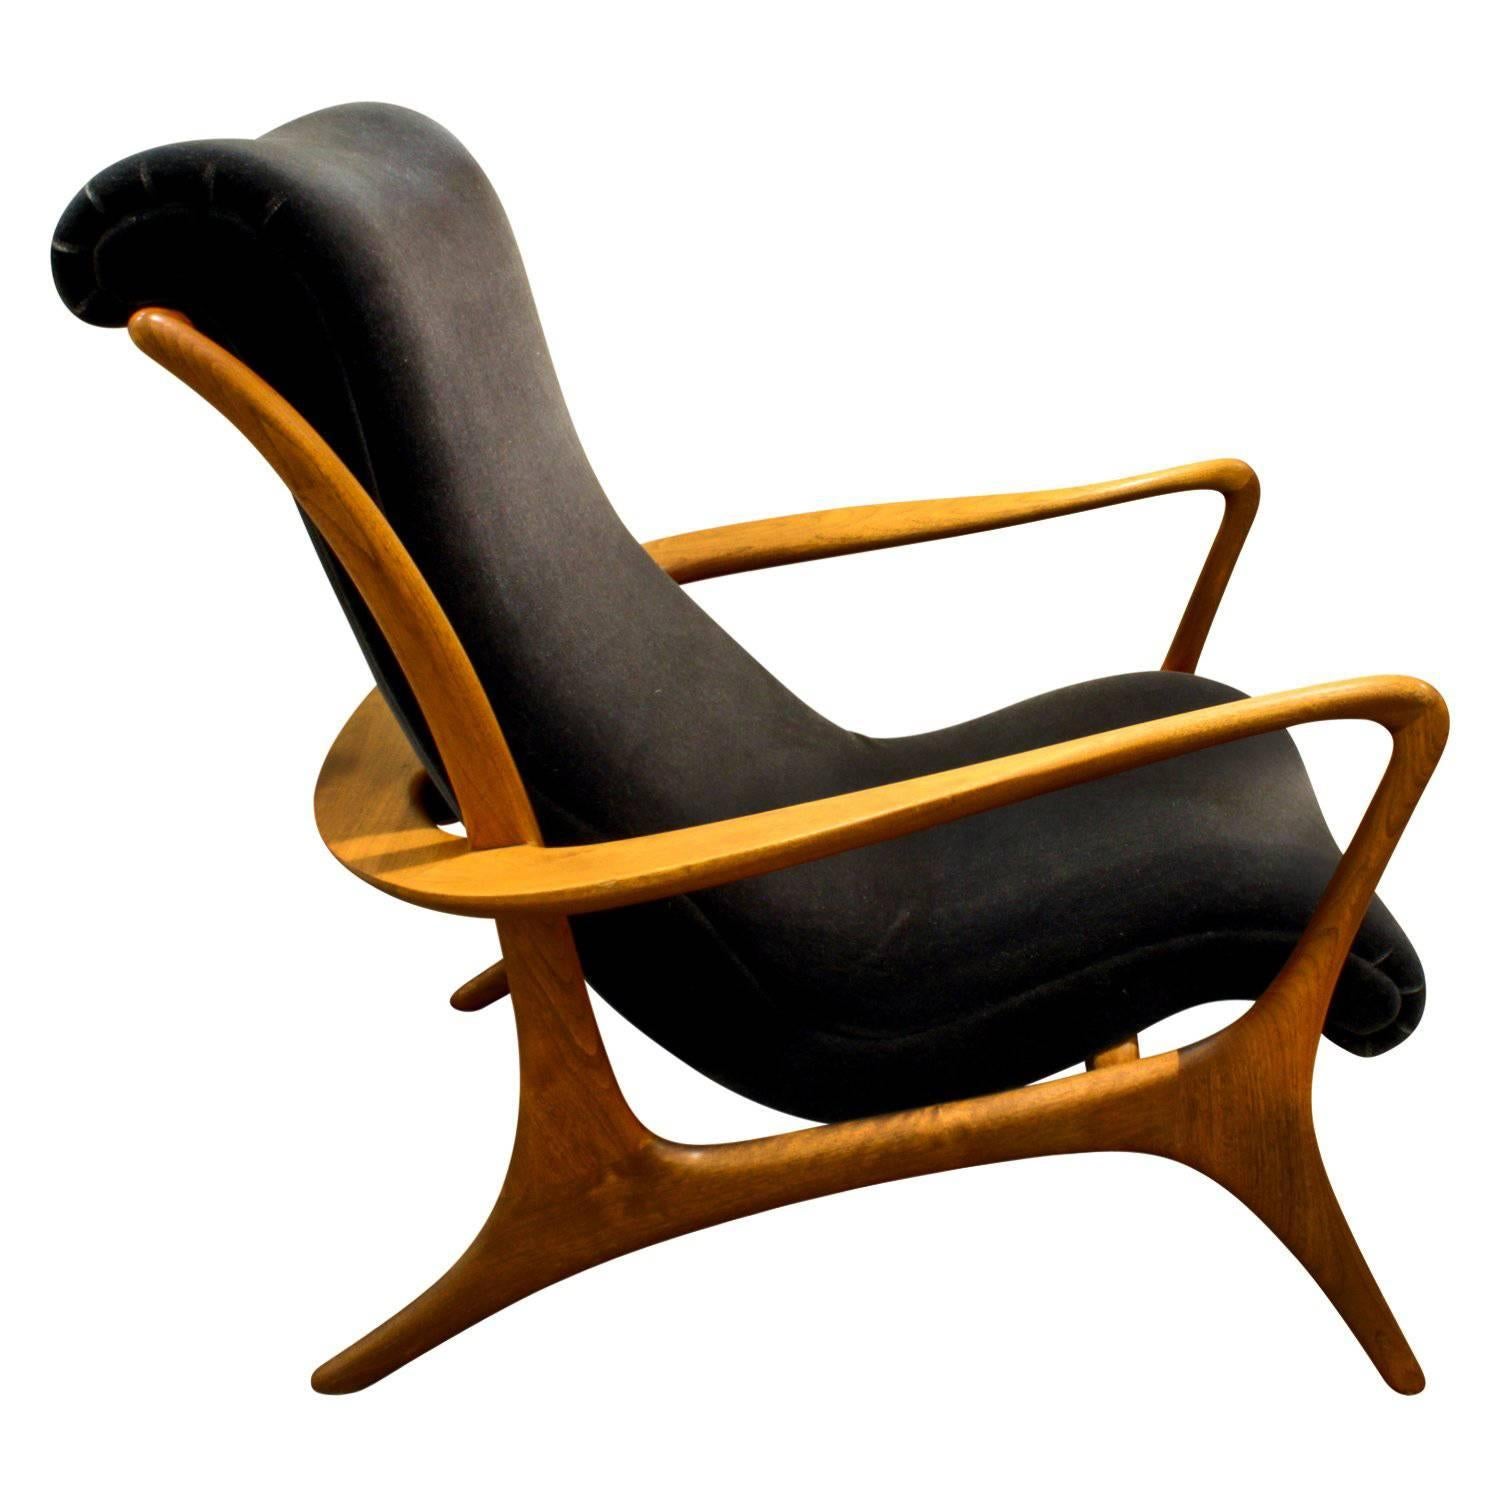 Vladimir Kagan Sculpted Contour Chair, 1950s